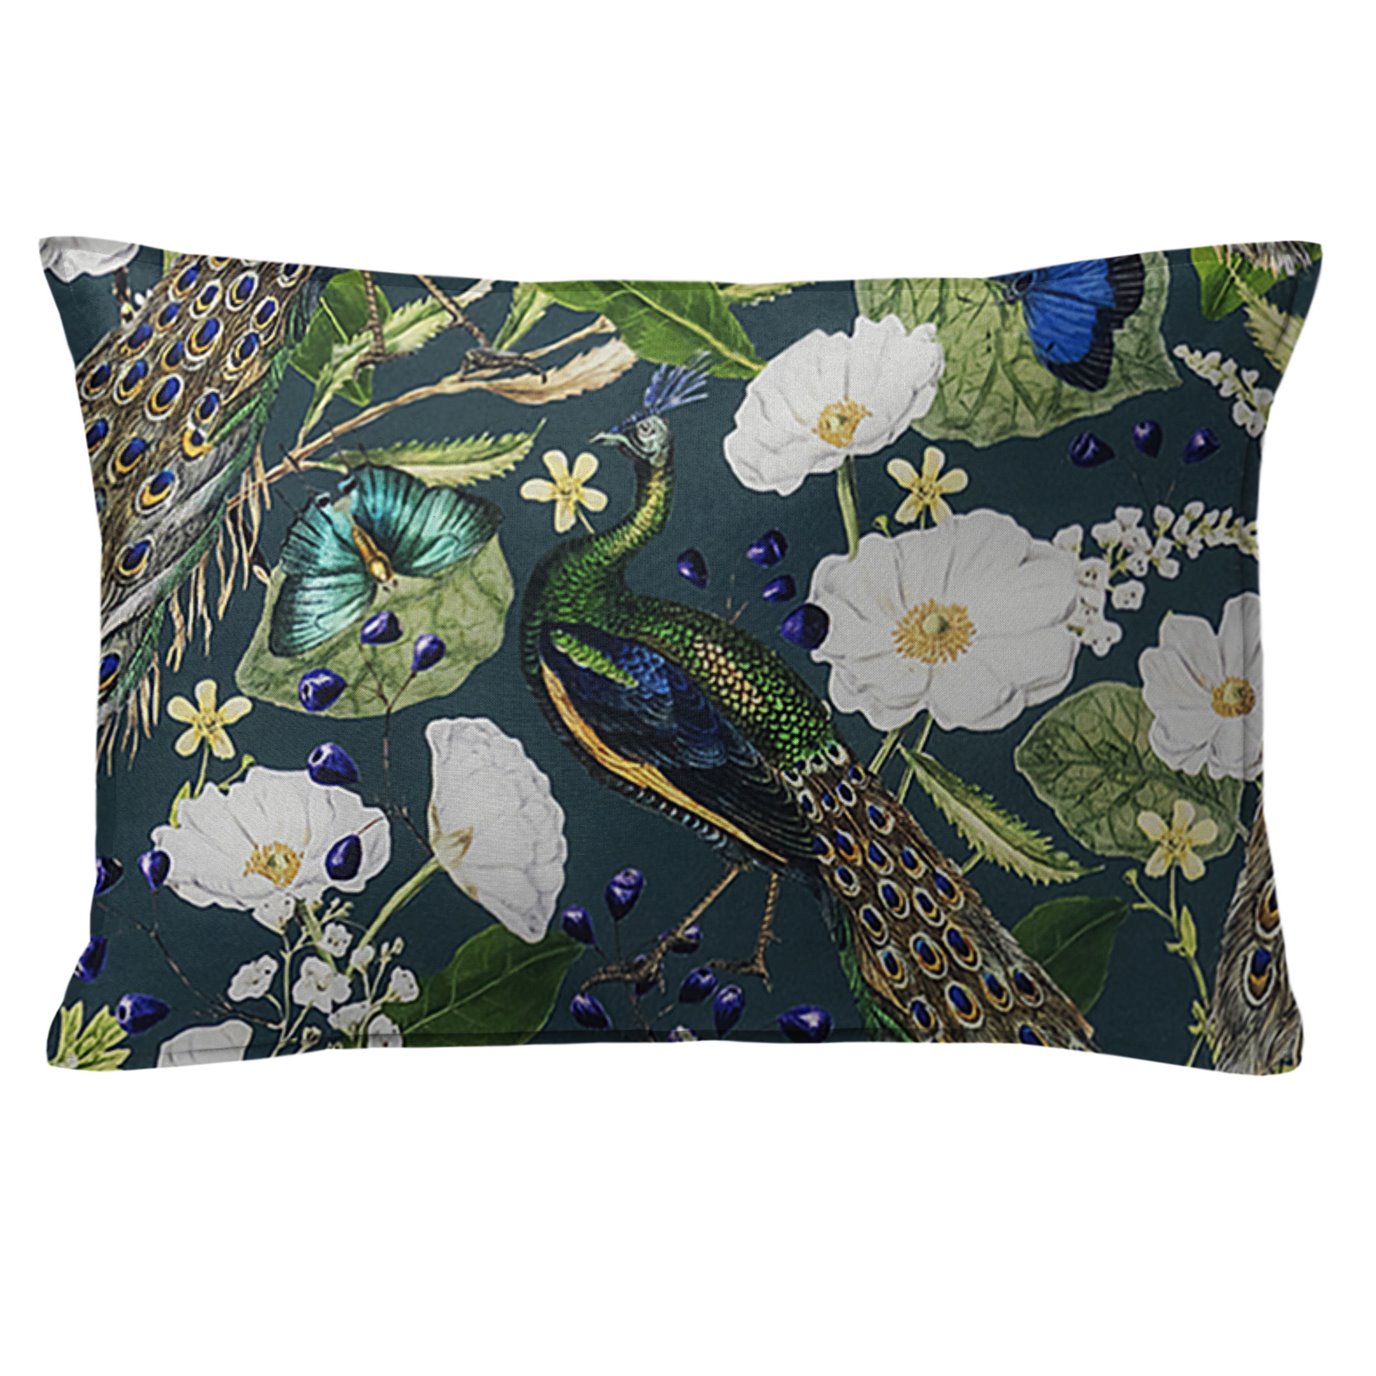 Peacock Print Teal/Navy Decorative Pillow - Size 14"x20" Rectangle